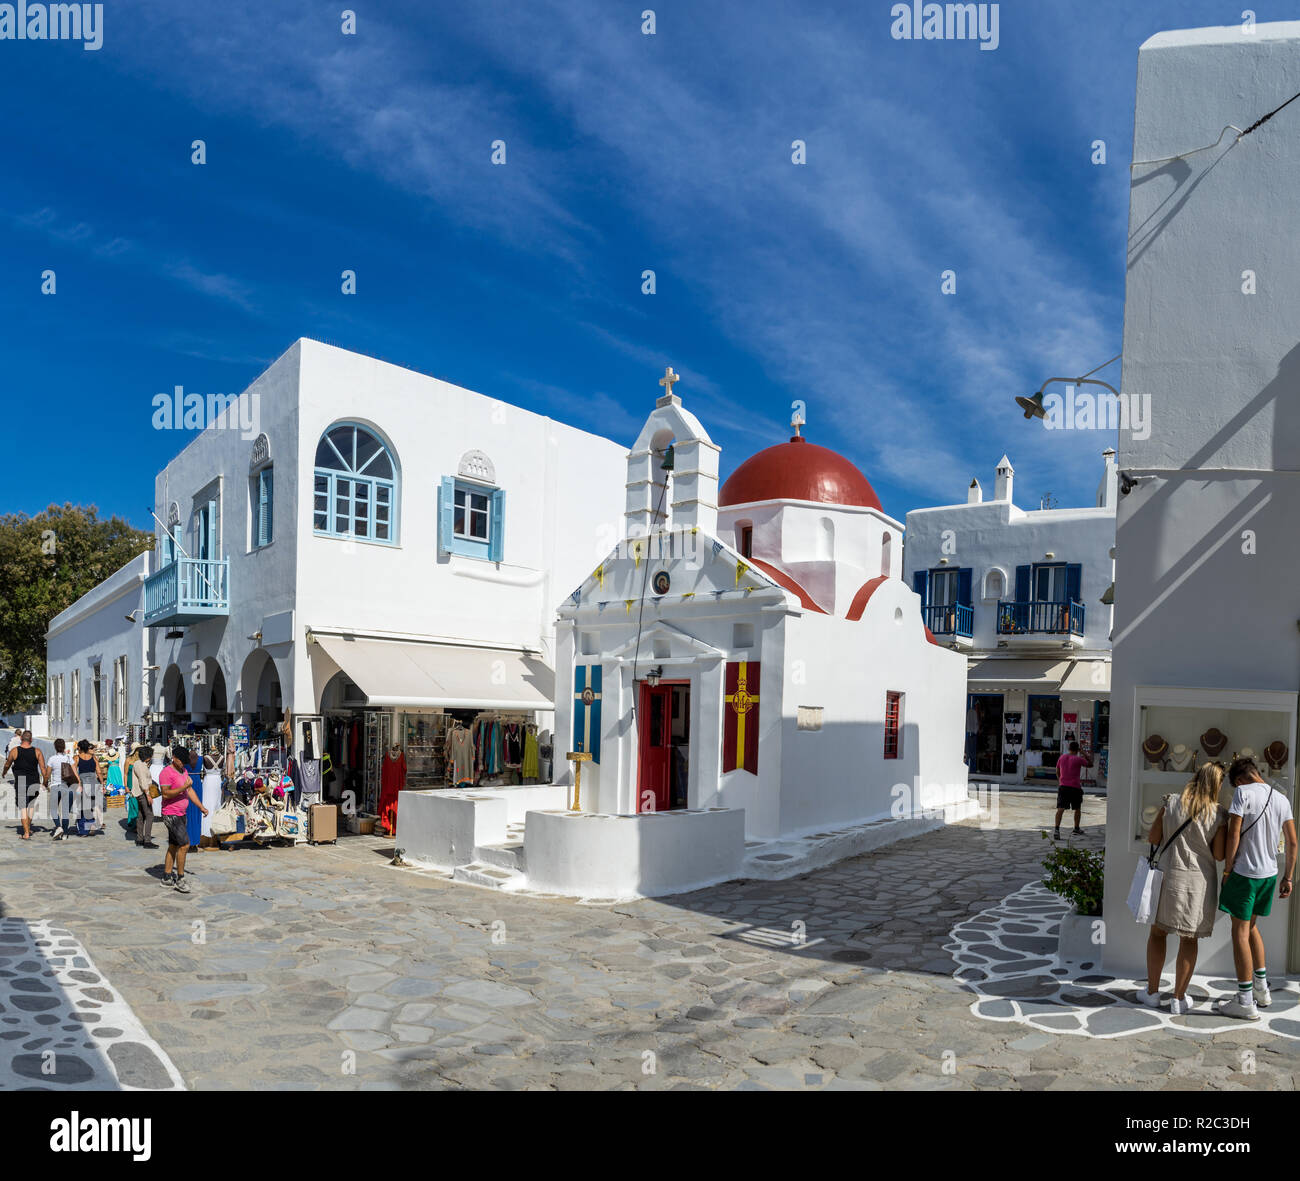 Une petite église de style byzantin dans l'île grecque de Mykonos. L'architecture traditionnelle de la mer Égée. Banque D'Images